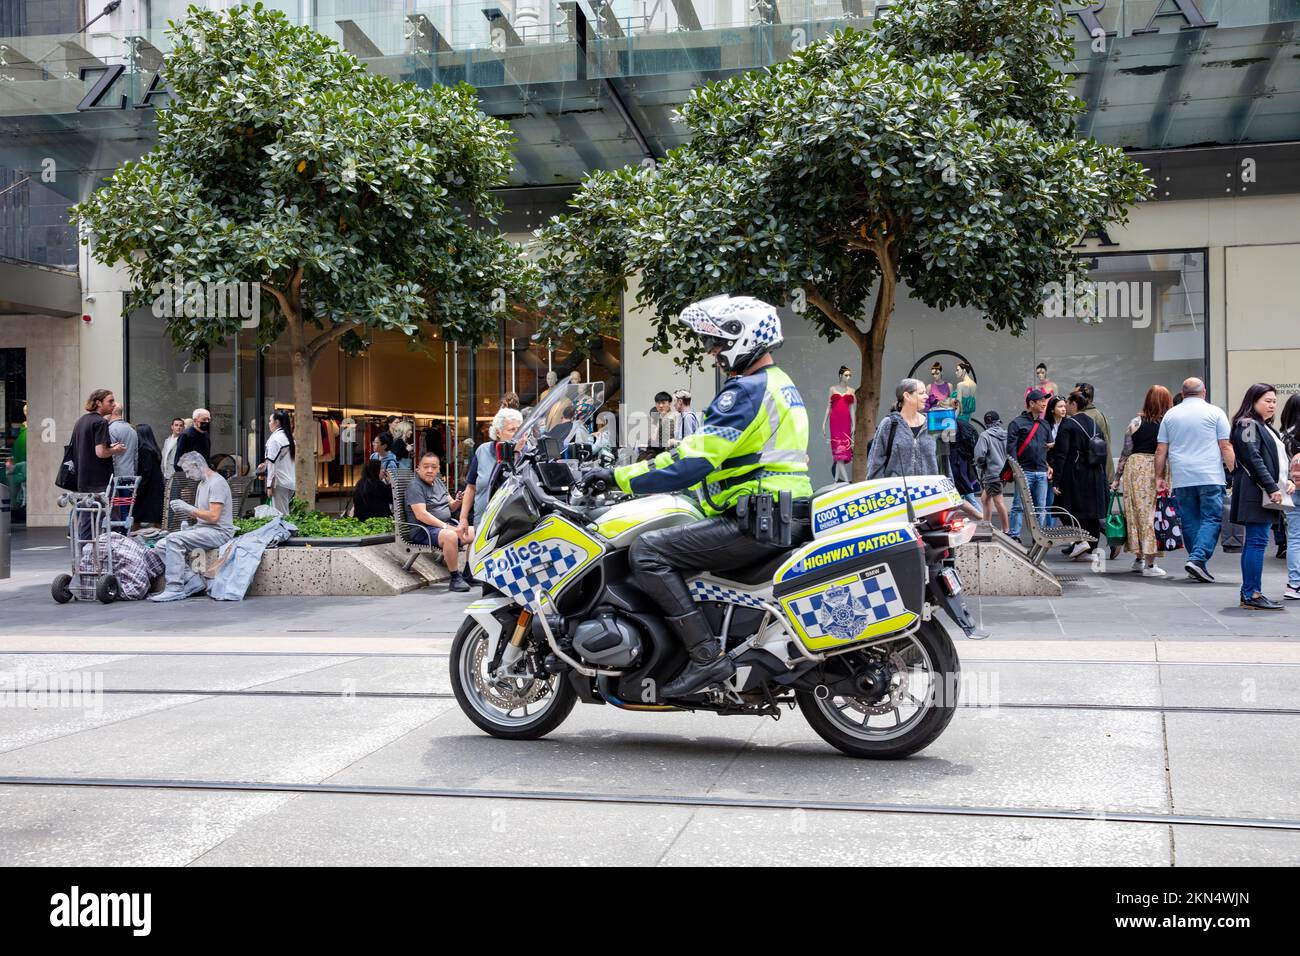 Un policier australien sur l'autoroute BMW moto de patrouille observe des manifestations de rue dans le centre-ville de Melbourne, Victoria, Australie Banque D'Images